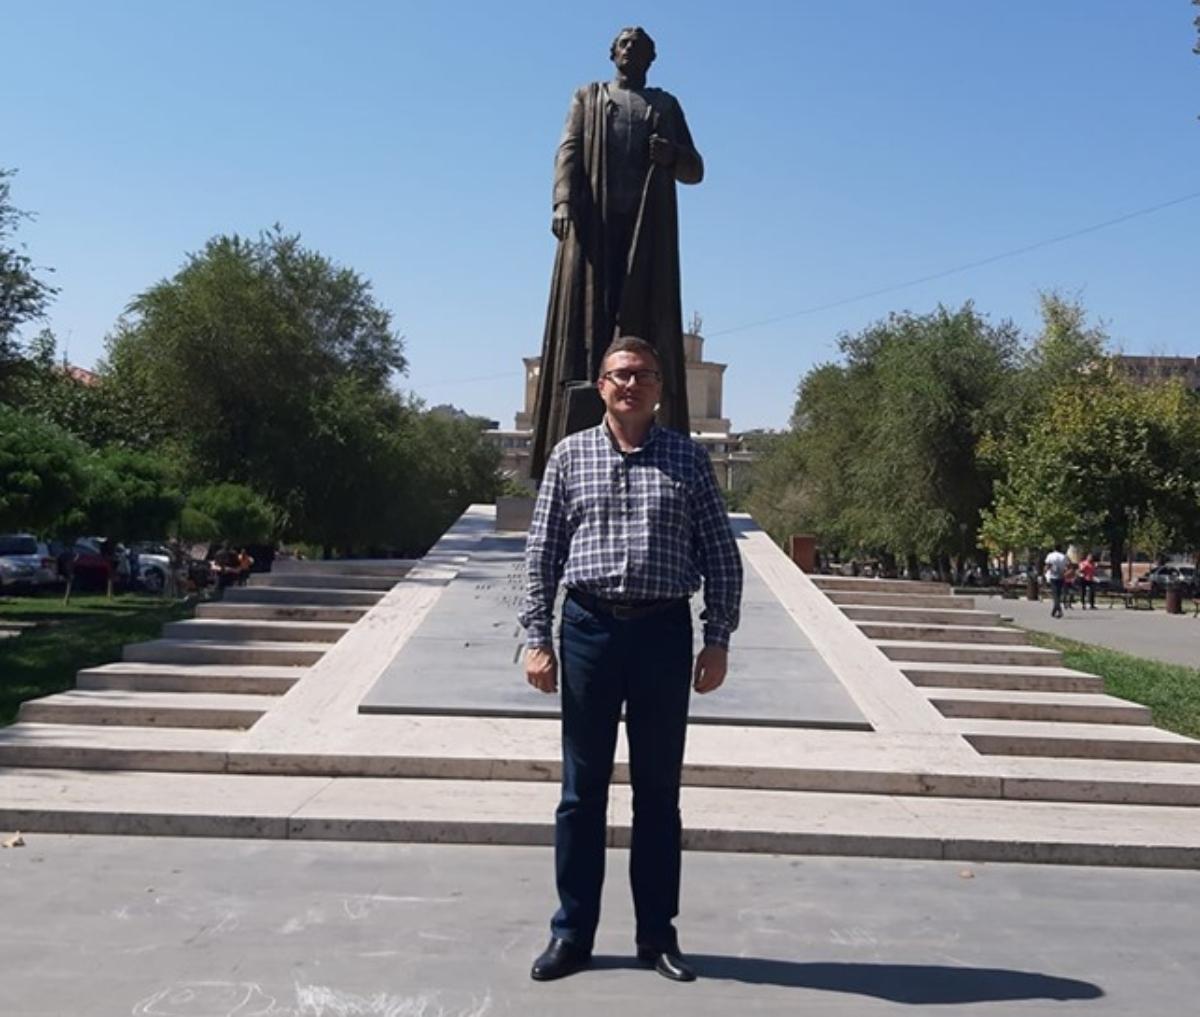 Ռուս ակտիվիստ Շիշկինը ՀՀ-ում ապաստան ստացե՞լ է, թե՞ ոչ․ լուրերի հետքերով